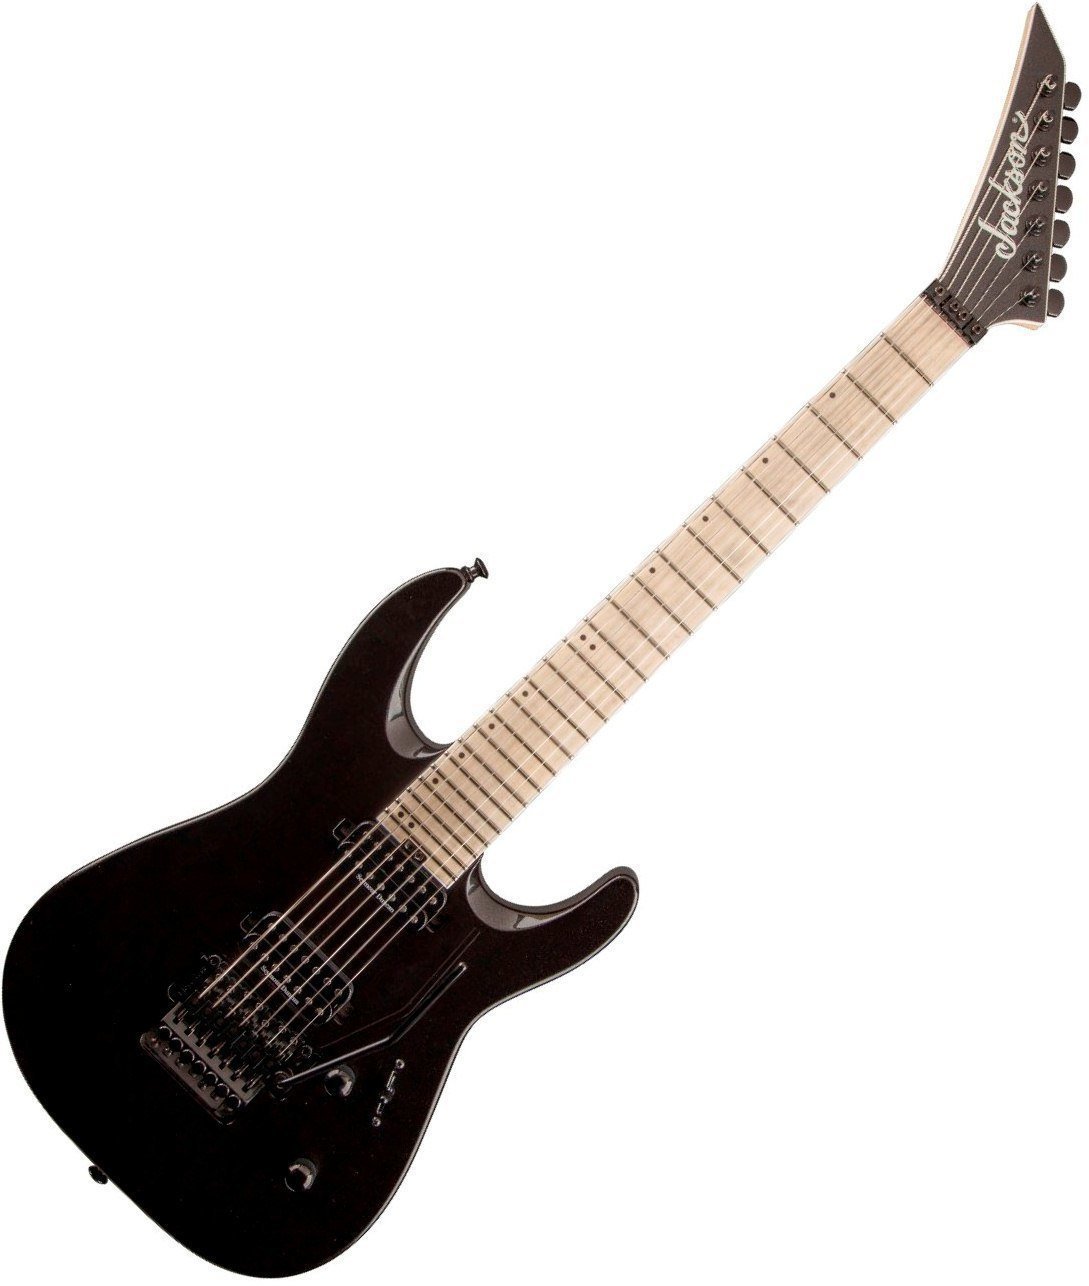 Ηλεκτρική Κιθάρα Jackson Pro DK7-M Dinky Metallic Black